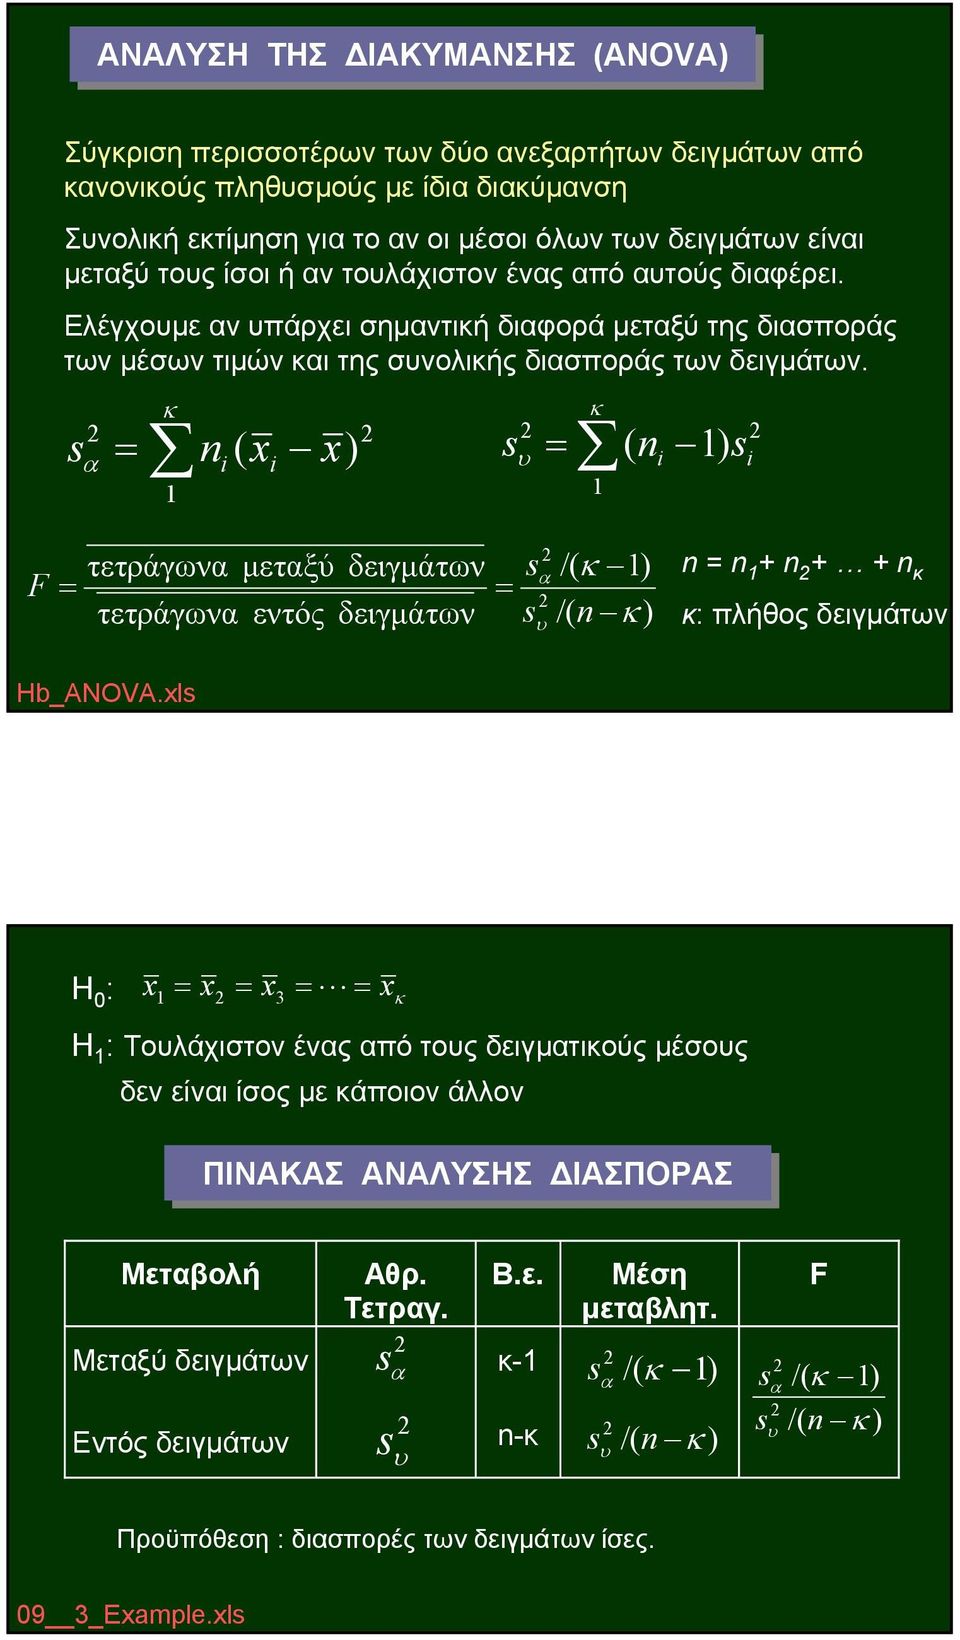 α κ ( ) υ ) κ ( F τετράγωνα μεταξύ δειγμάτων τετράγωνα εντός δειγμάτων α υ /( κ ) /( κ ) + + + κ κ: πλήθος δειγμάτων Hb_ANOVA.